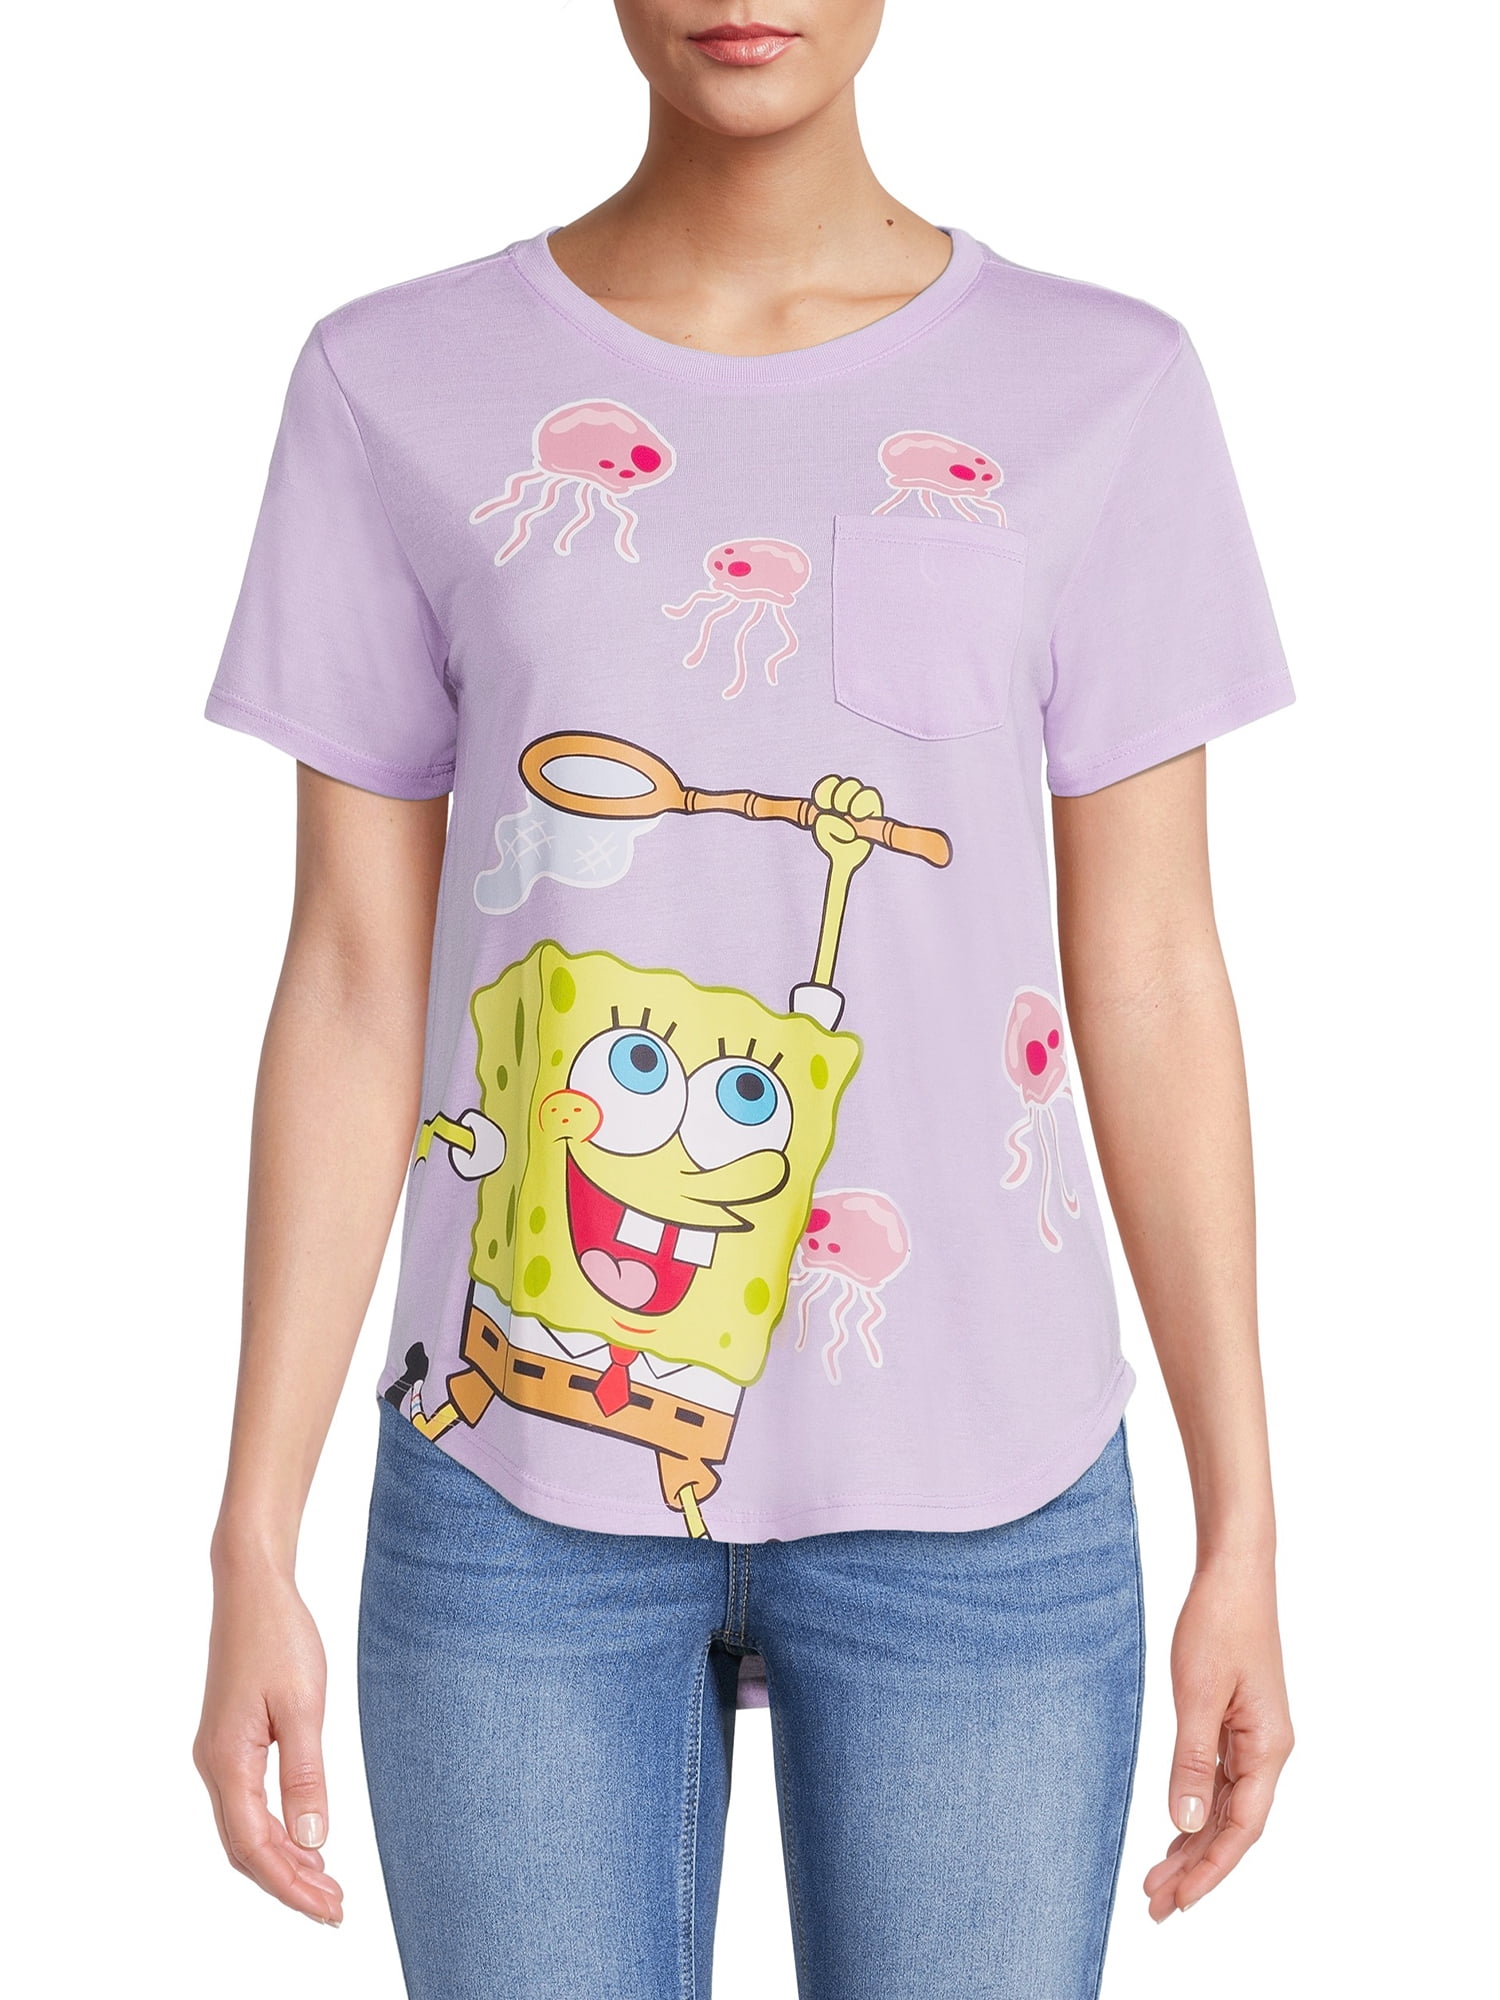 LICENSE Spongebob Women’s Allover Print T-Shirt